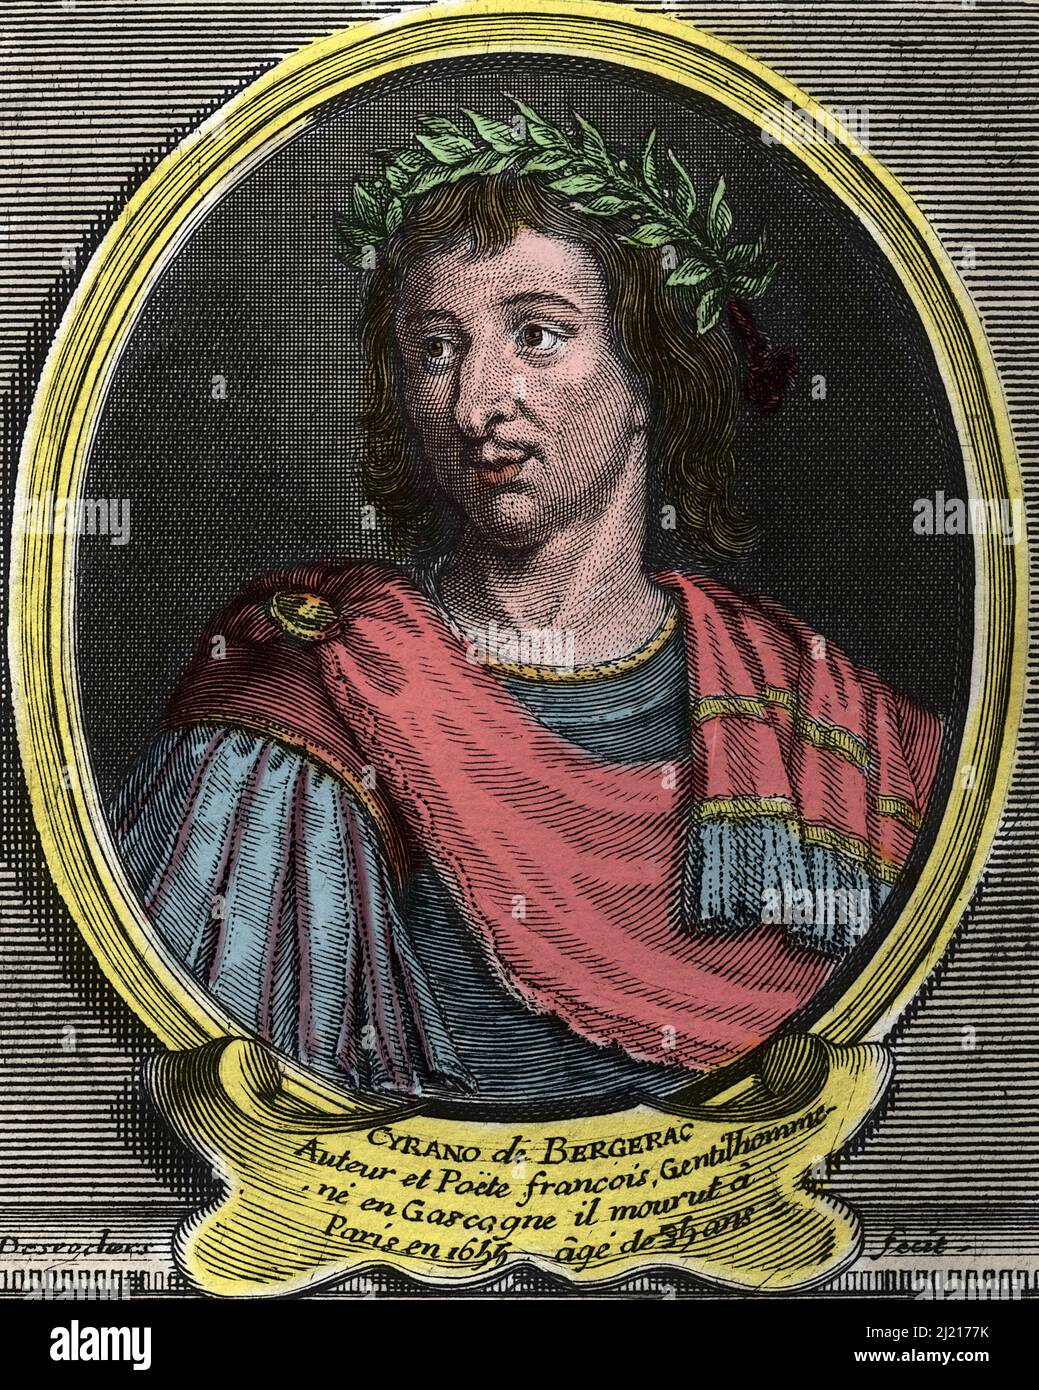 Portrait de Hercule Savinien de Cyrano de Bergerac (1619 - 1655) ecrivain francais .Gravure du 18eme siecle . Stock Photo